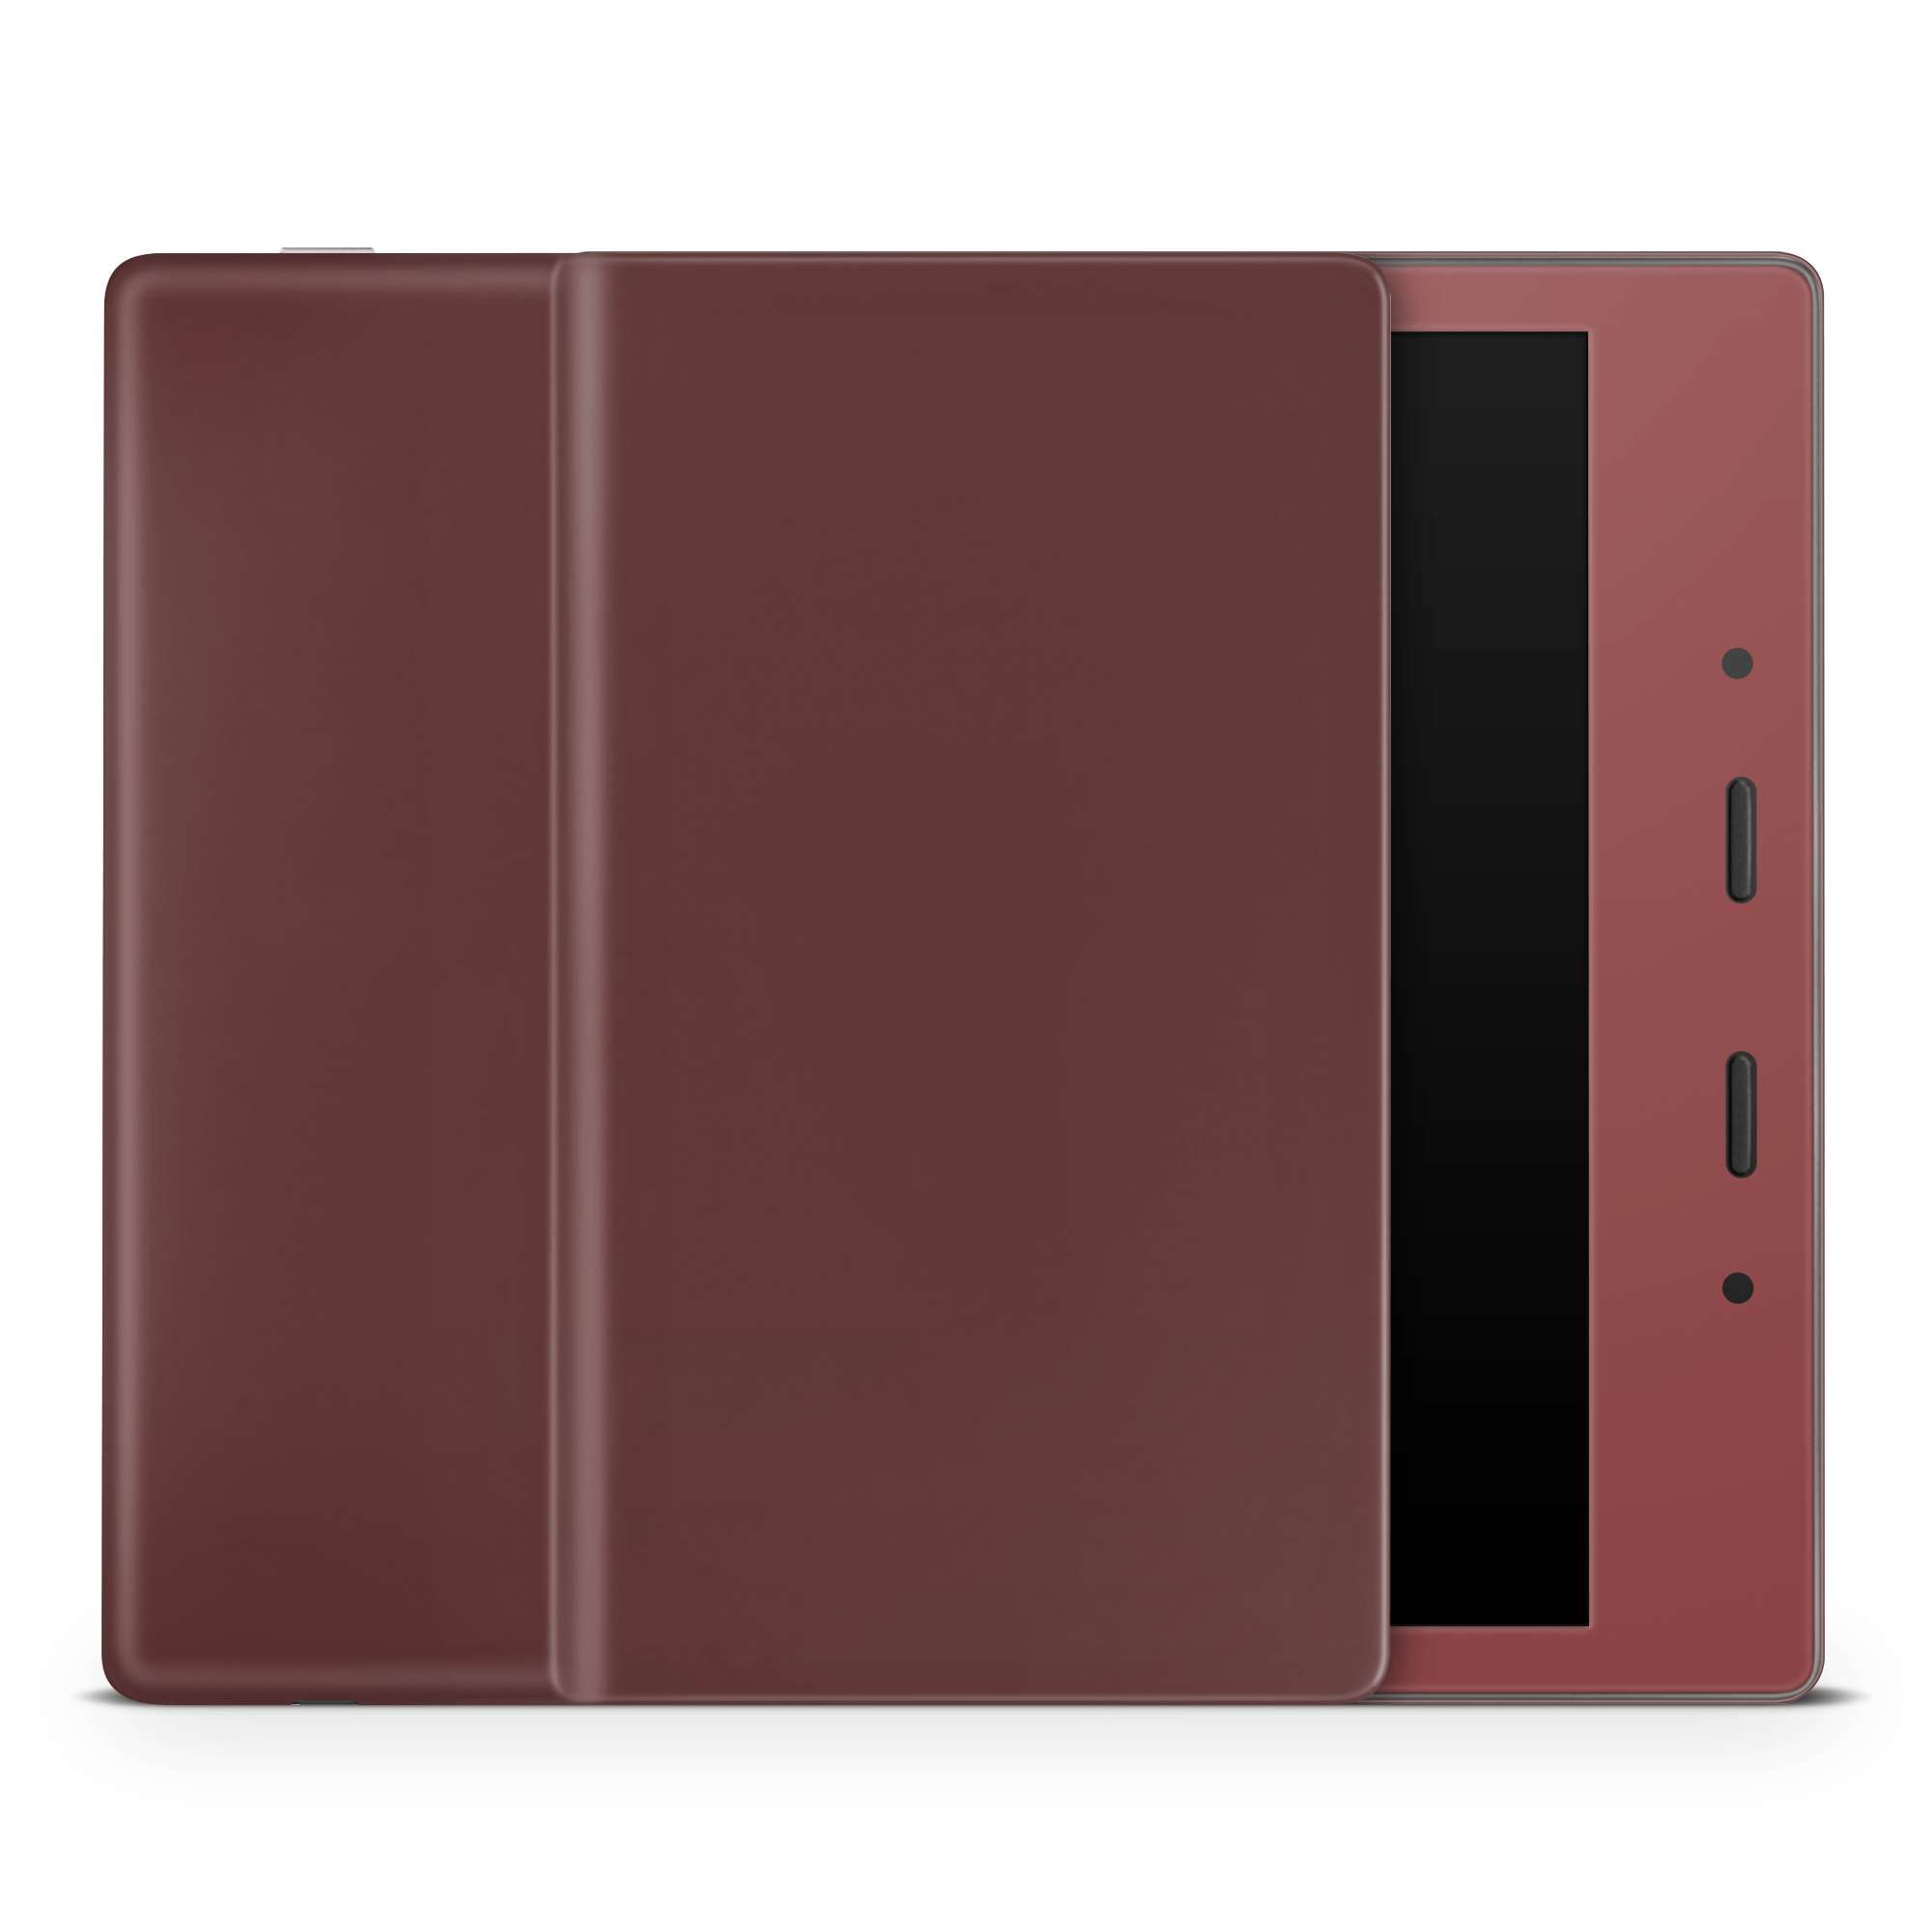 Velvet Maroon Amazon Kindle Skins